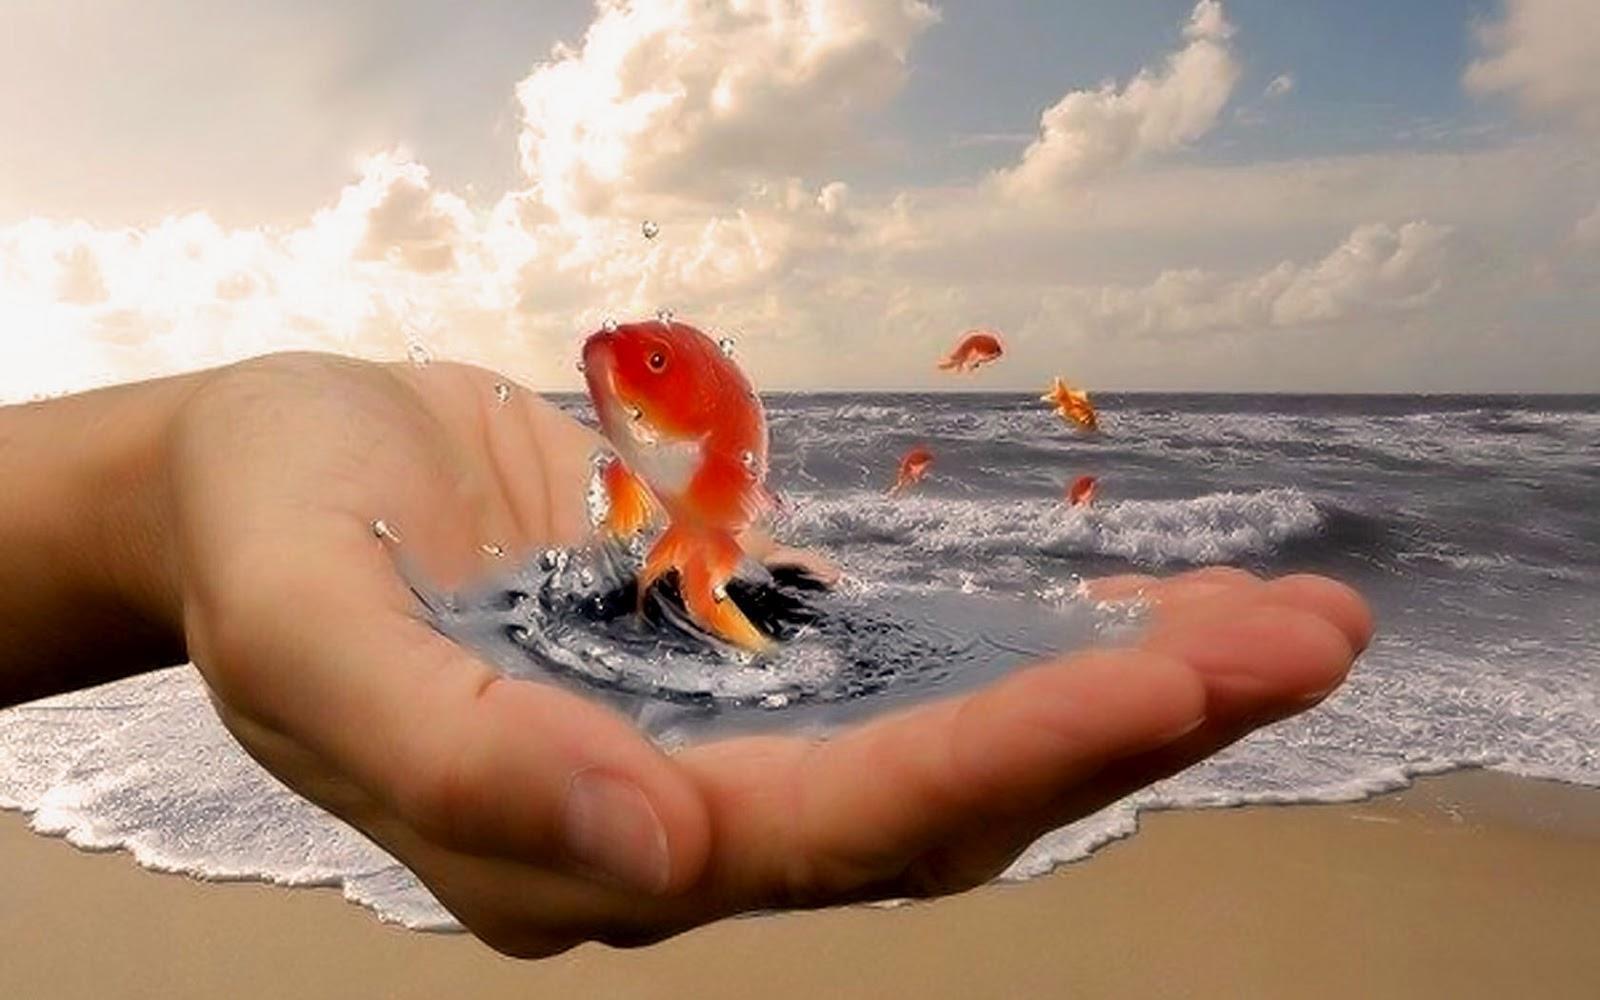 Чудесная судьба 1. Золотая рыбка в руках. Золотая рыбка исполнение желаний. Добро у моря. Золотая рыбка исполняет желания.